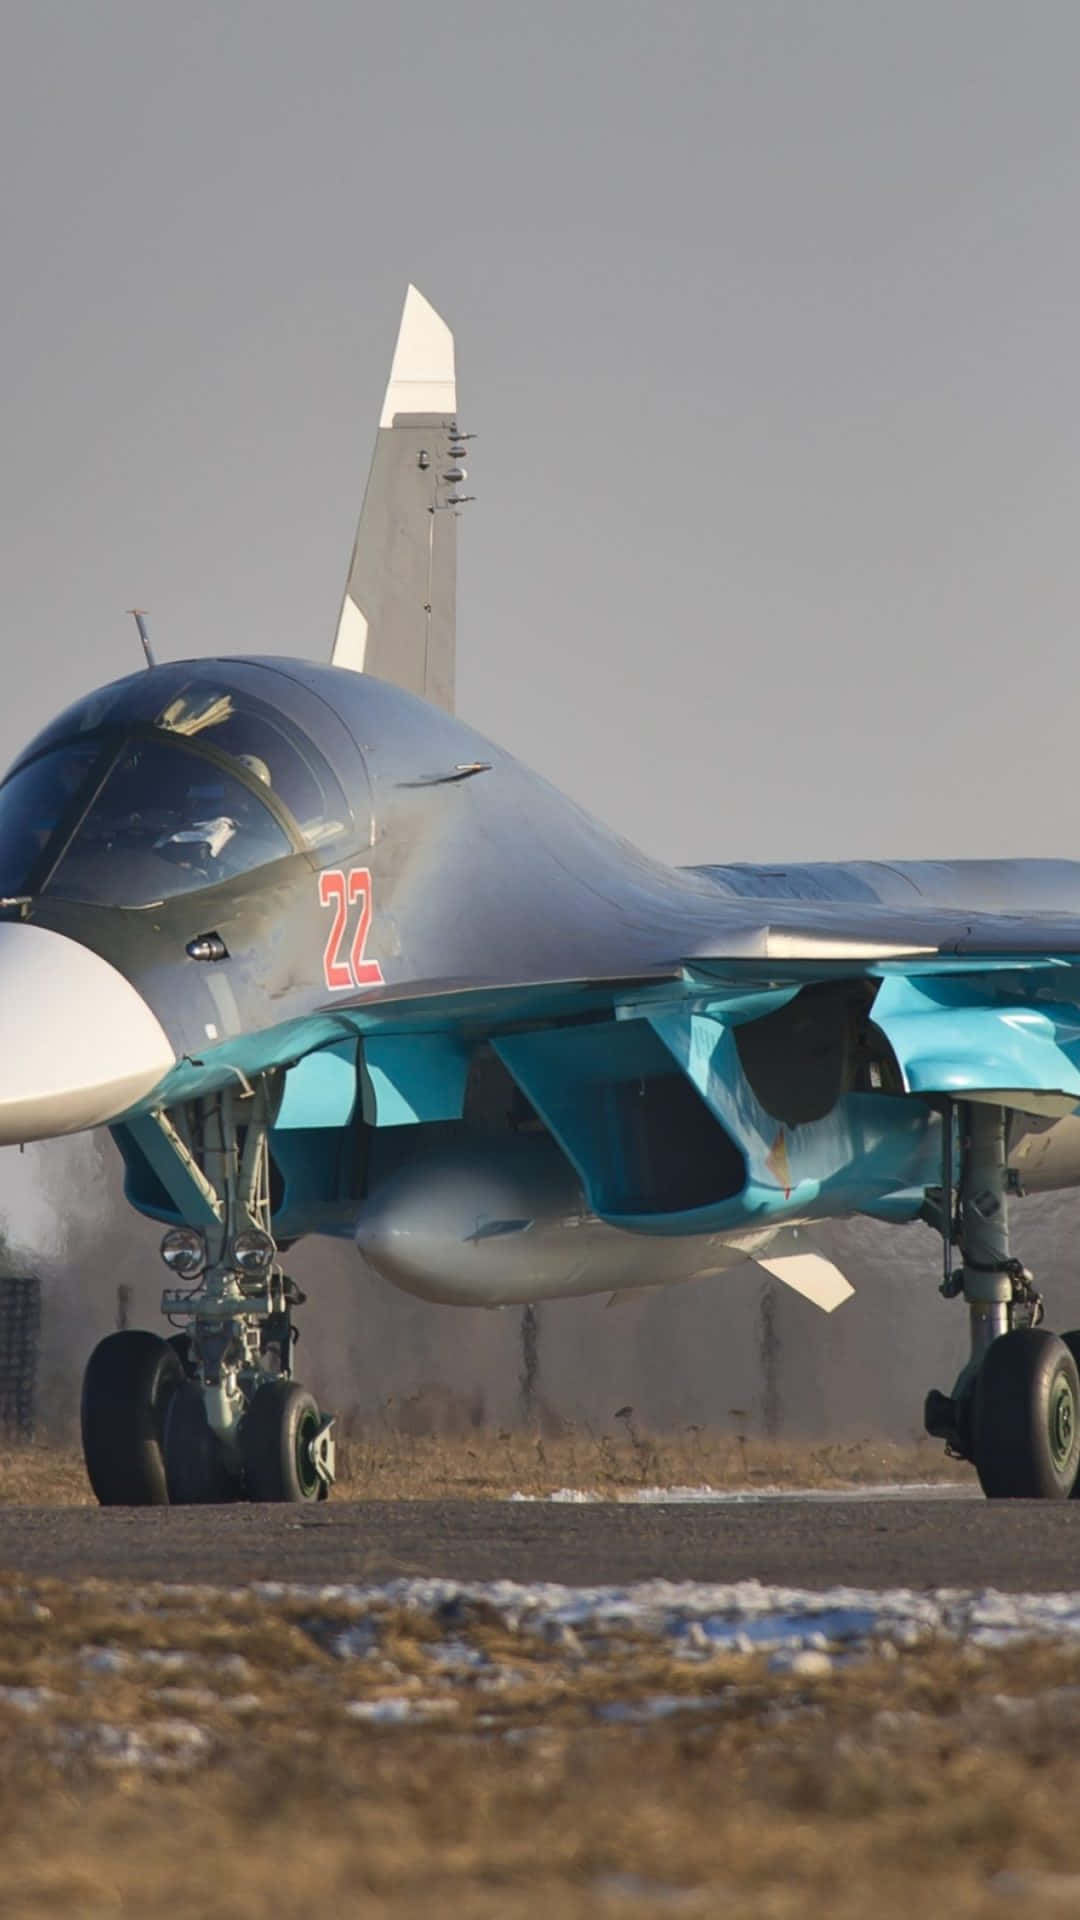 Blauersukhoi Su-34 Android Jumbo Jet Hintergrund.